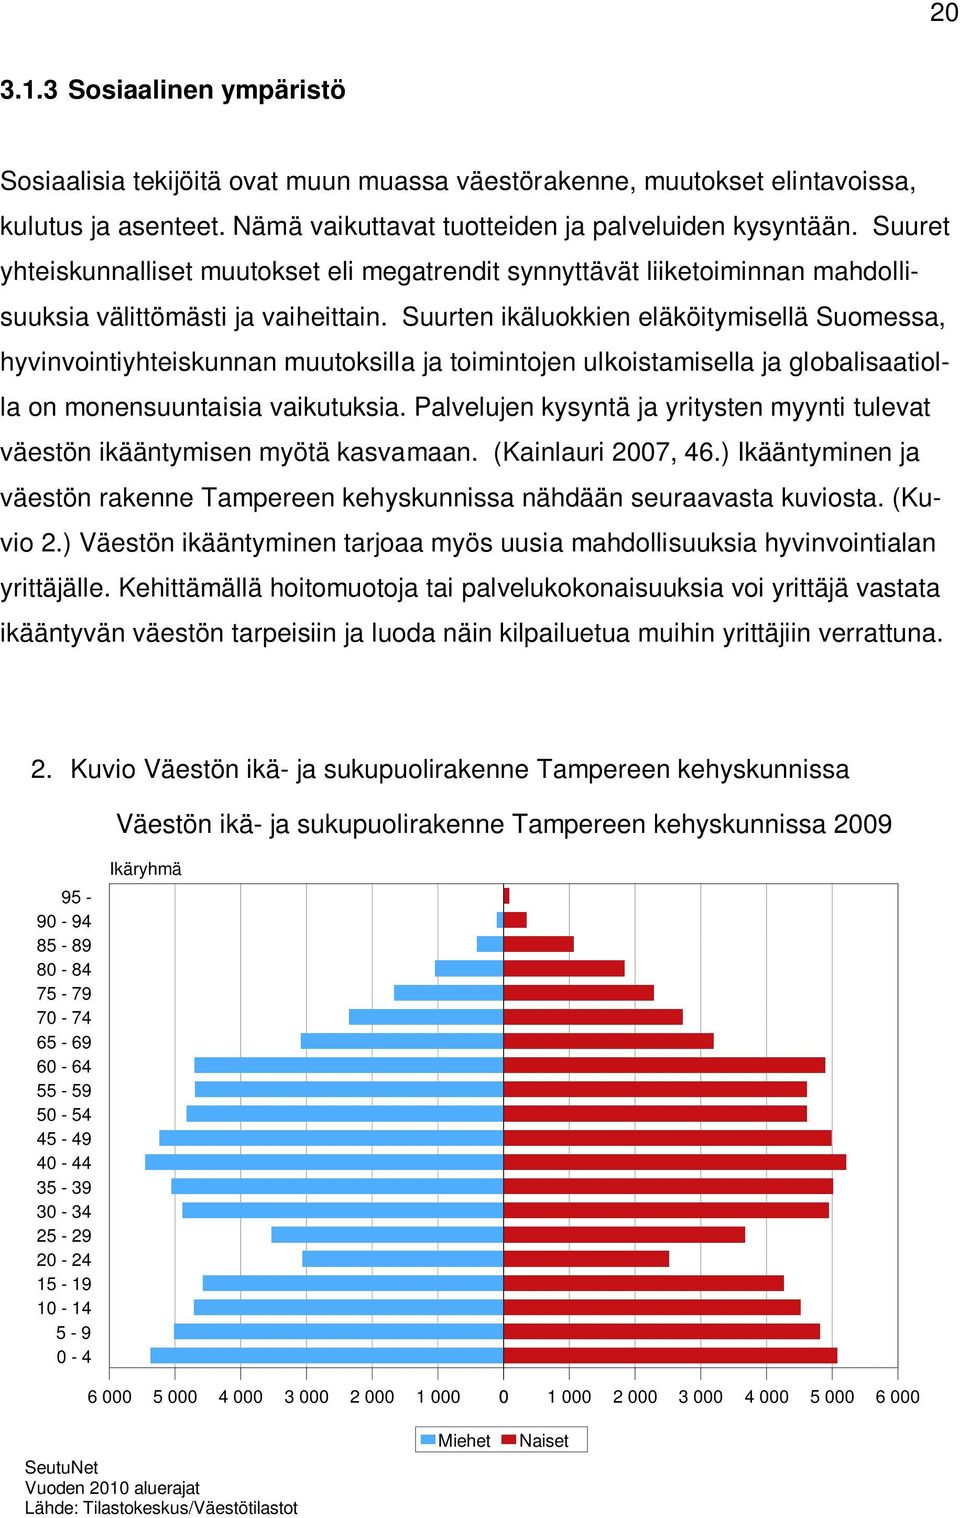 Suurten ikäluokkien eläköitymisellä Suomessa, hyvinvointiyhteiskunnan muutoksilla ja toimintojen ulkoistamisella ja globalisaatiolla on monensuuntaisia vaikutuksia.